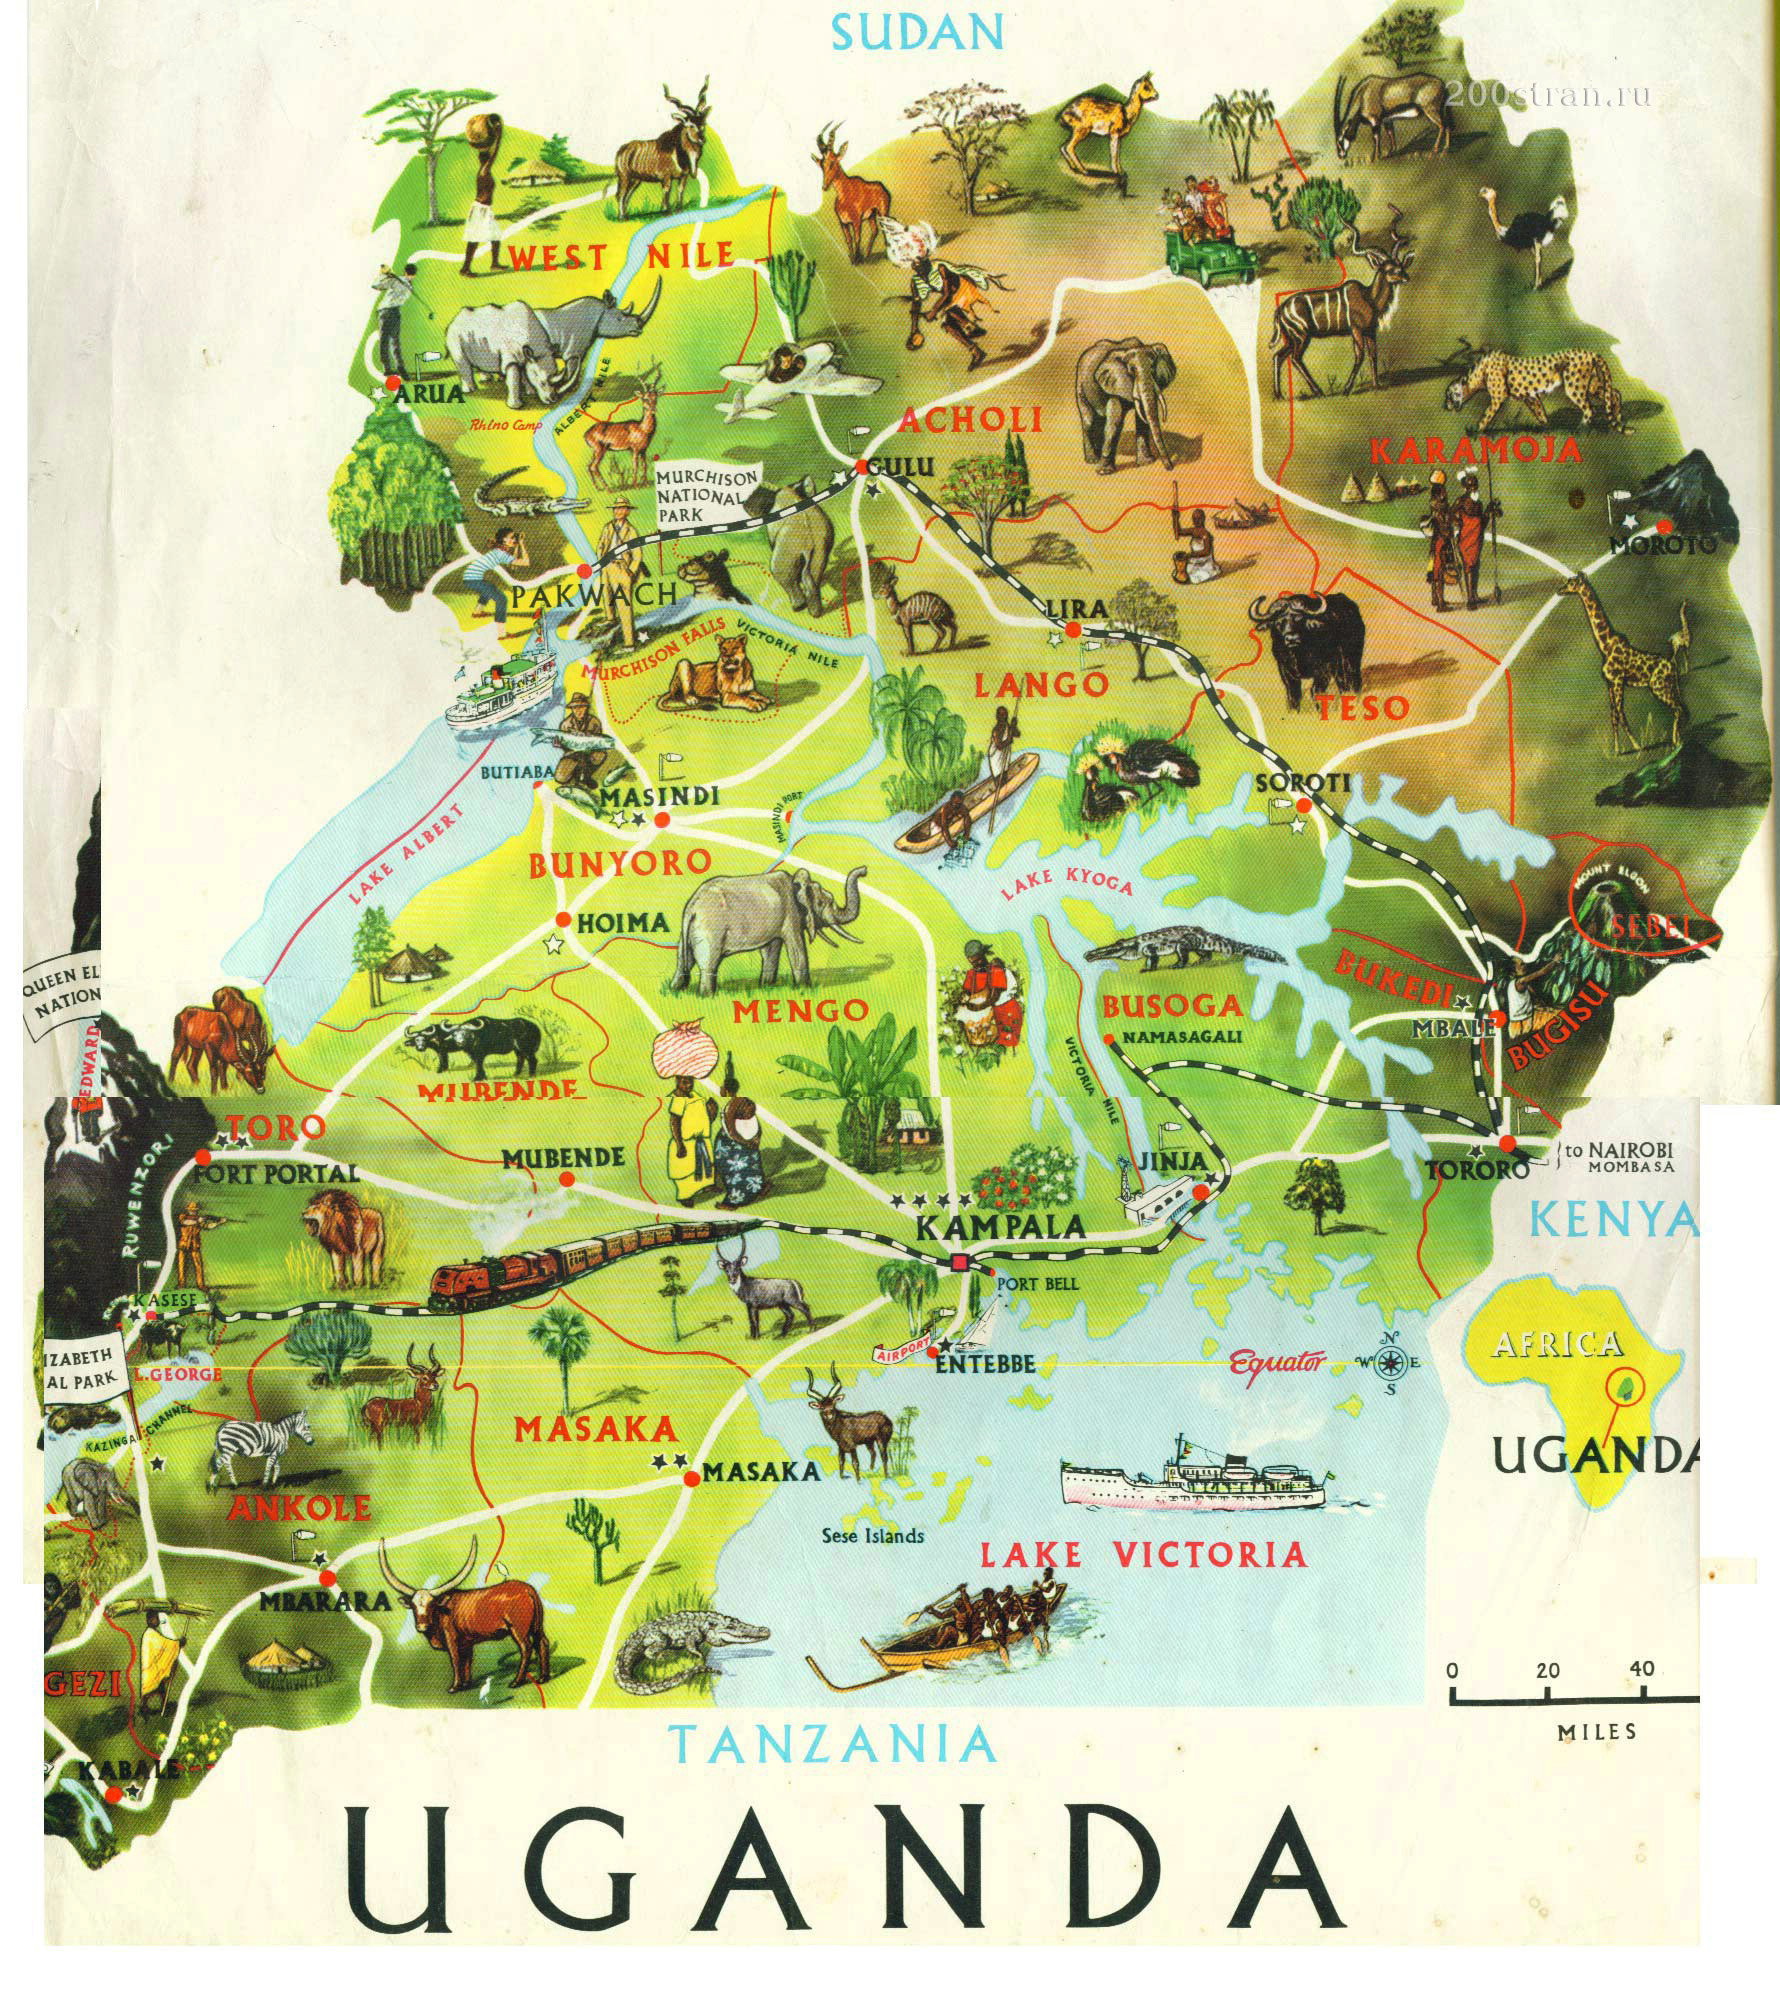 Γεύσεις και έθιμα από την Ουγκάντα